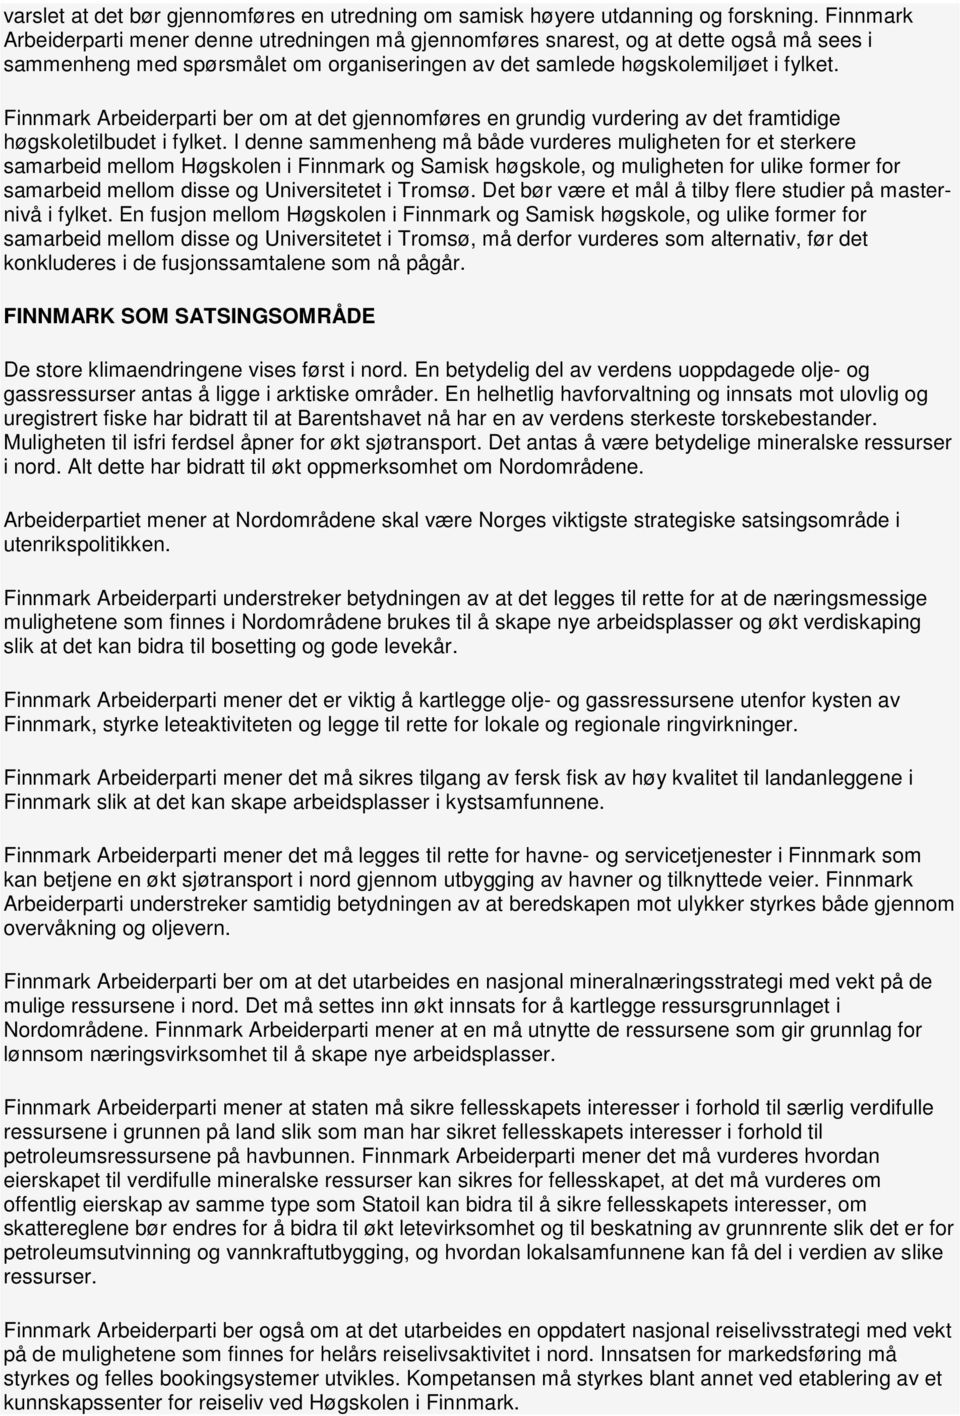 Finnmark Arbeiderparti ber om at det gjennomføres en grundig vurdering av det framtidige høgskoletilbudet i fylket.